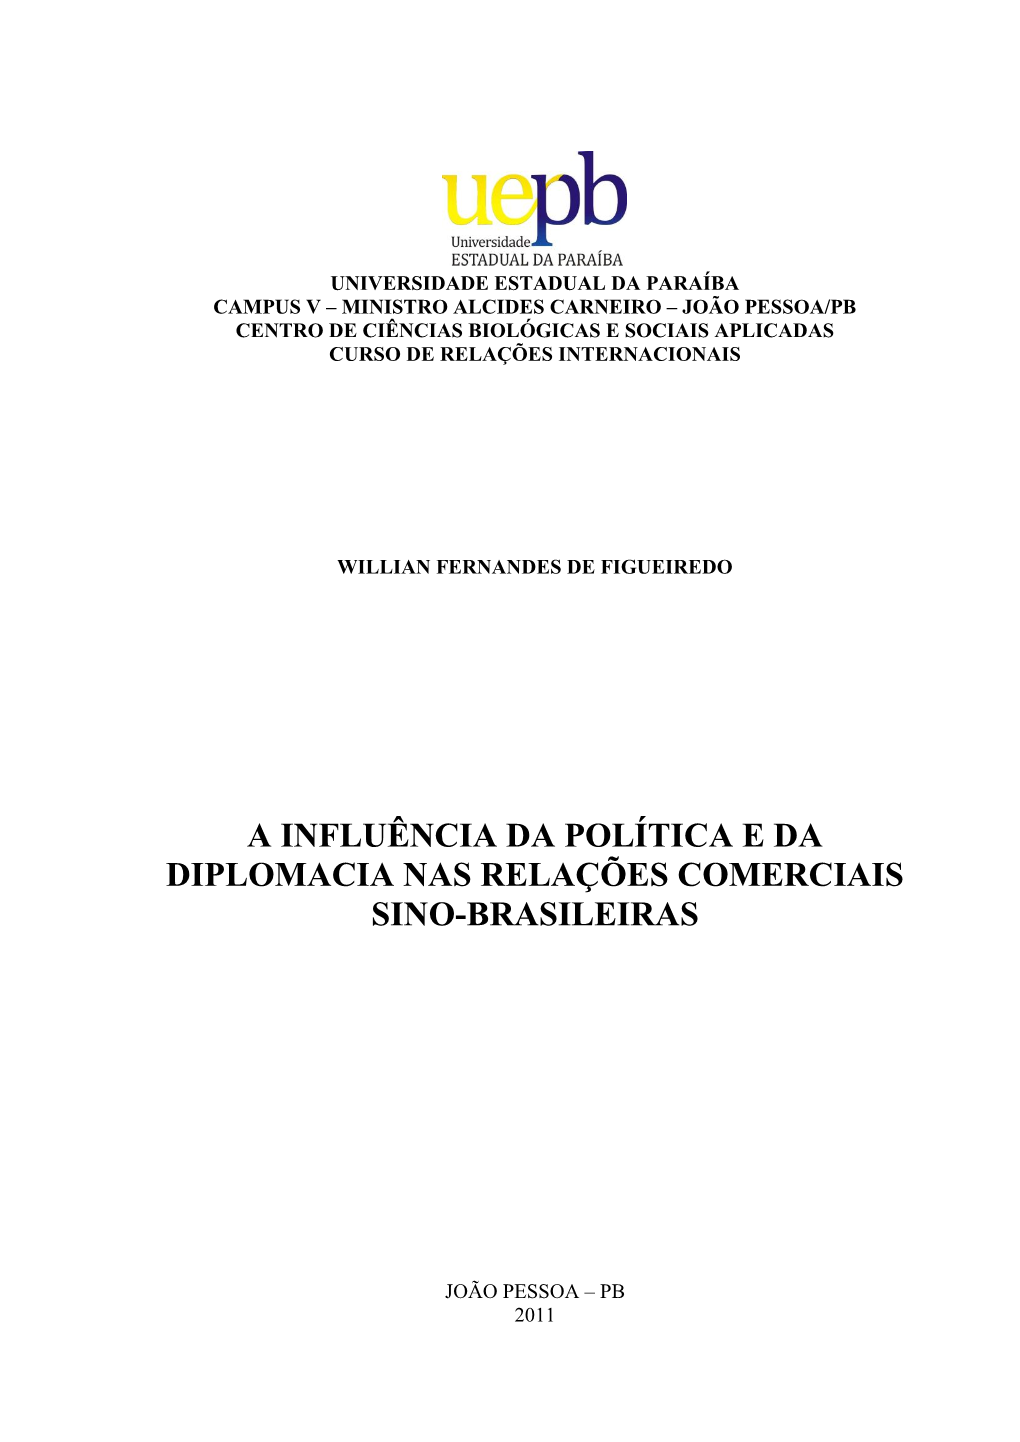 A Influência Da Política E Da Diplomacia Nas Relações Comerciais Sino-Brasileiras